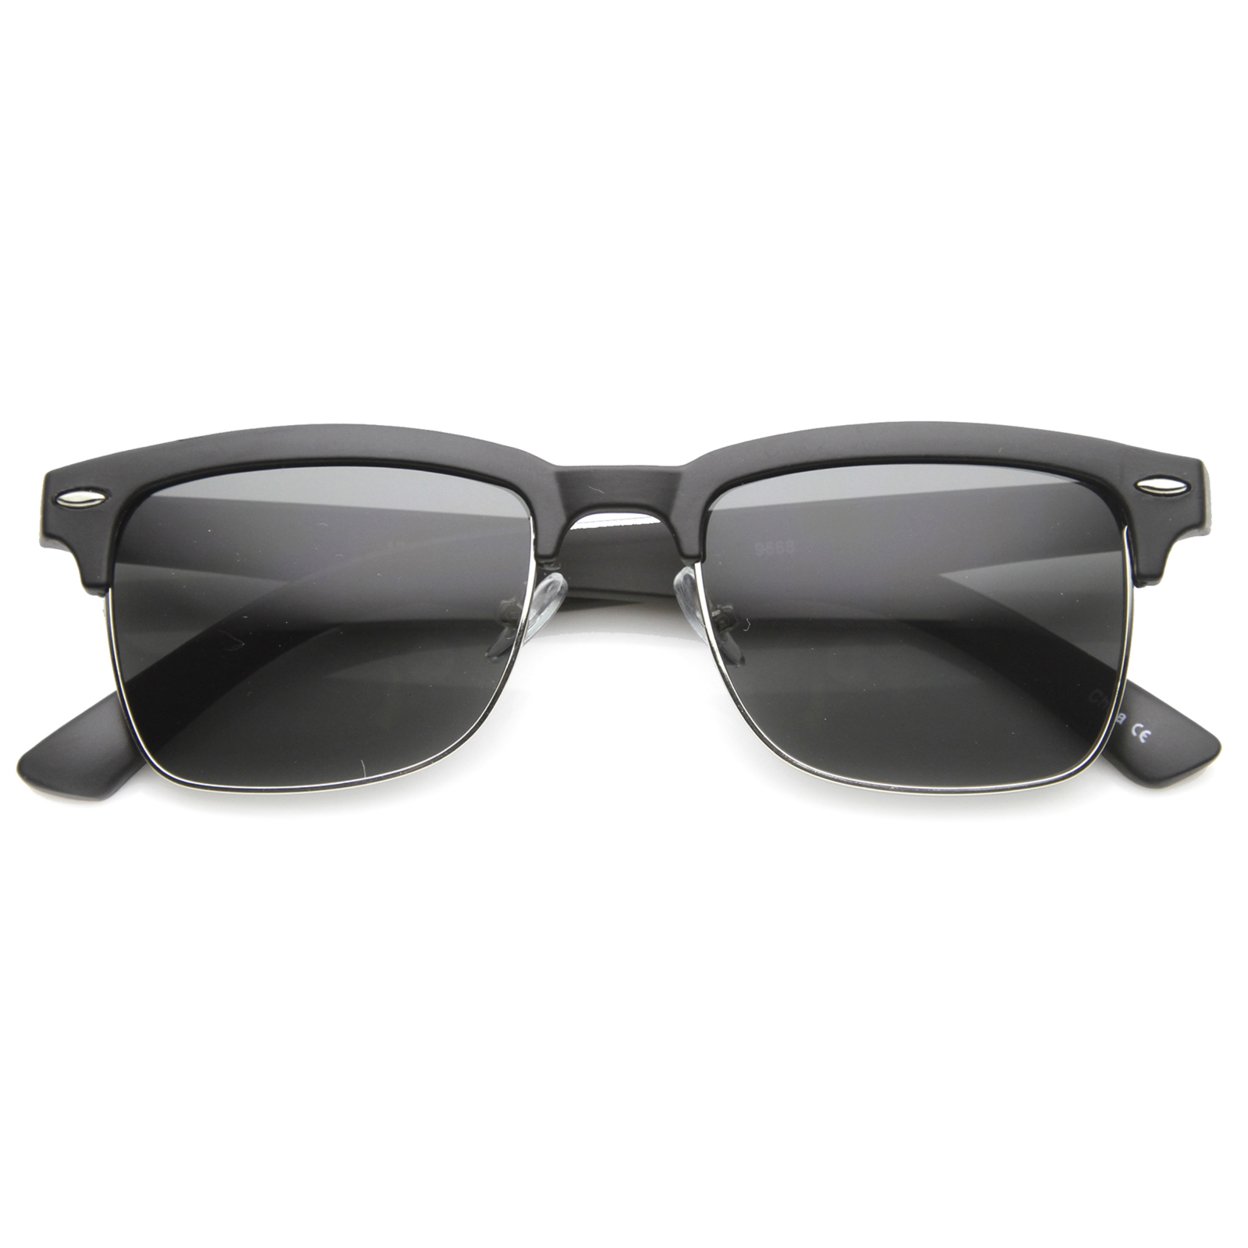 Classic Dapper Rectangular Half-Frame Horn Rimmed Sunglasses 9809 - Shiny Tortoise-Gold / Brown